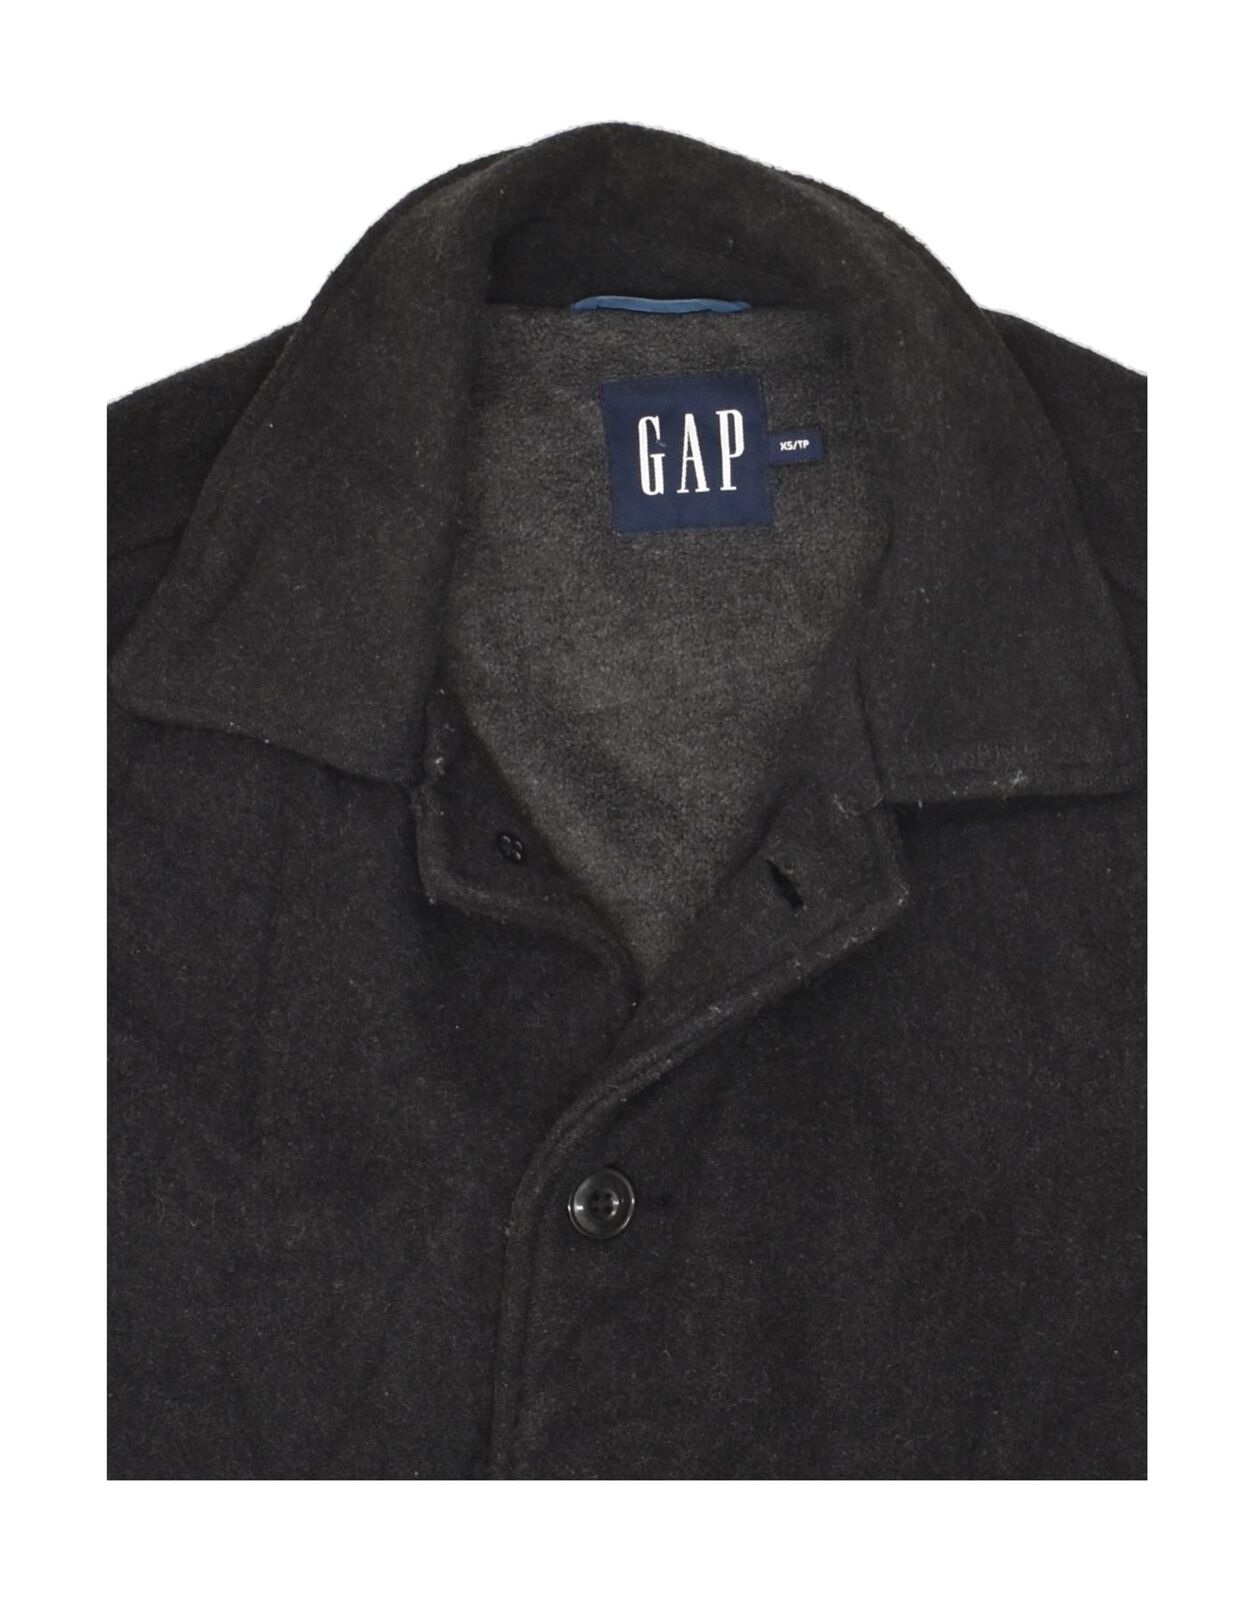 GAP Mens Overcoat UK 34 XS Black Wool BC01 - image 3